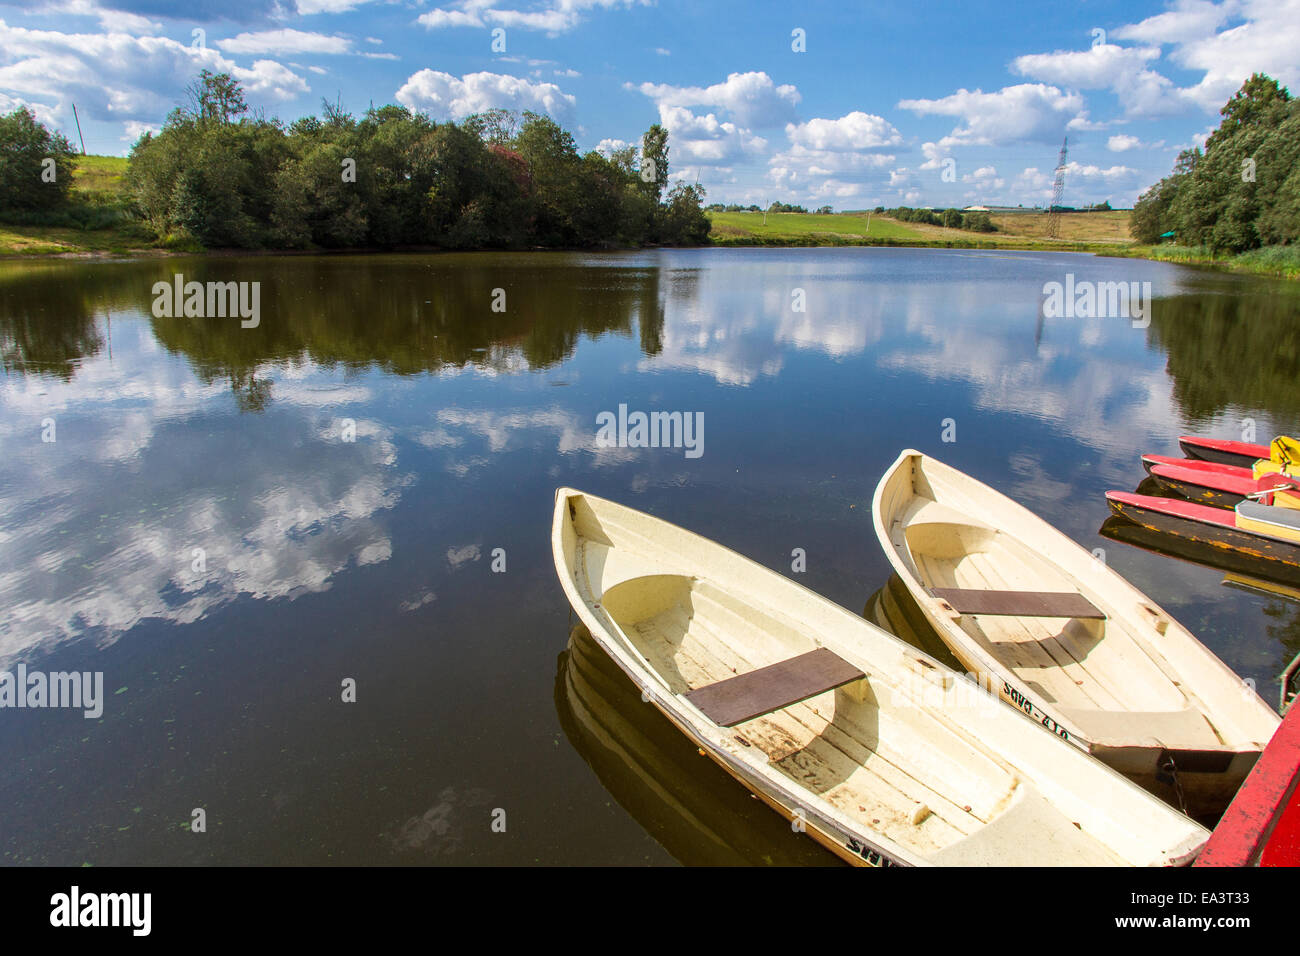 Boats, Kamenka river, Moscow region, Russia Stock Photo